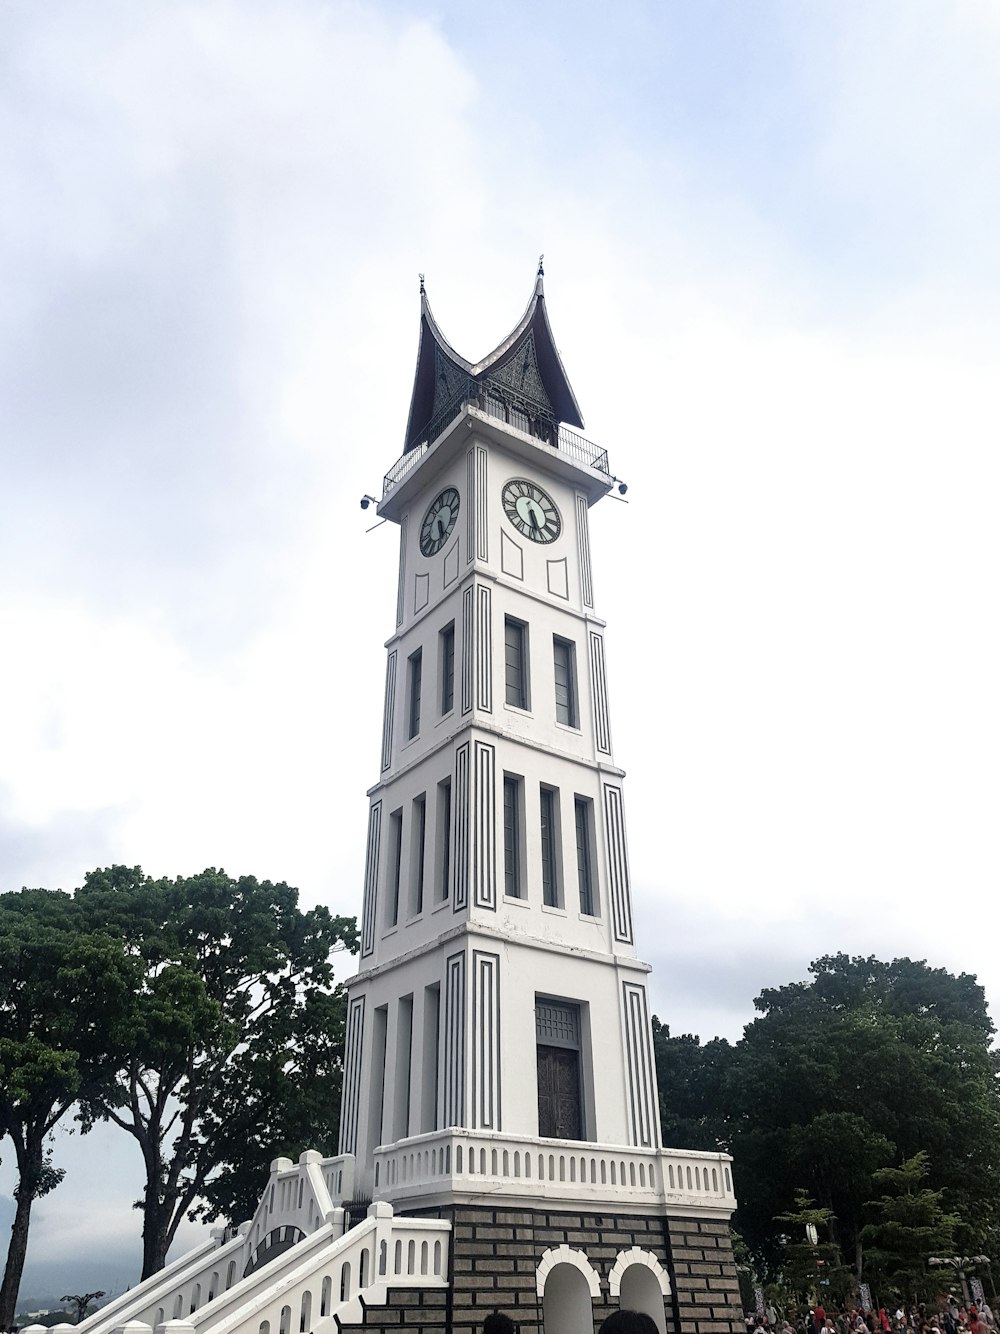 a clock tower on Jam Gadang